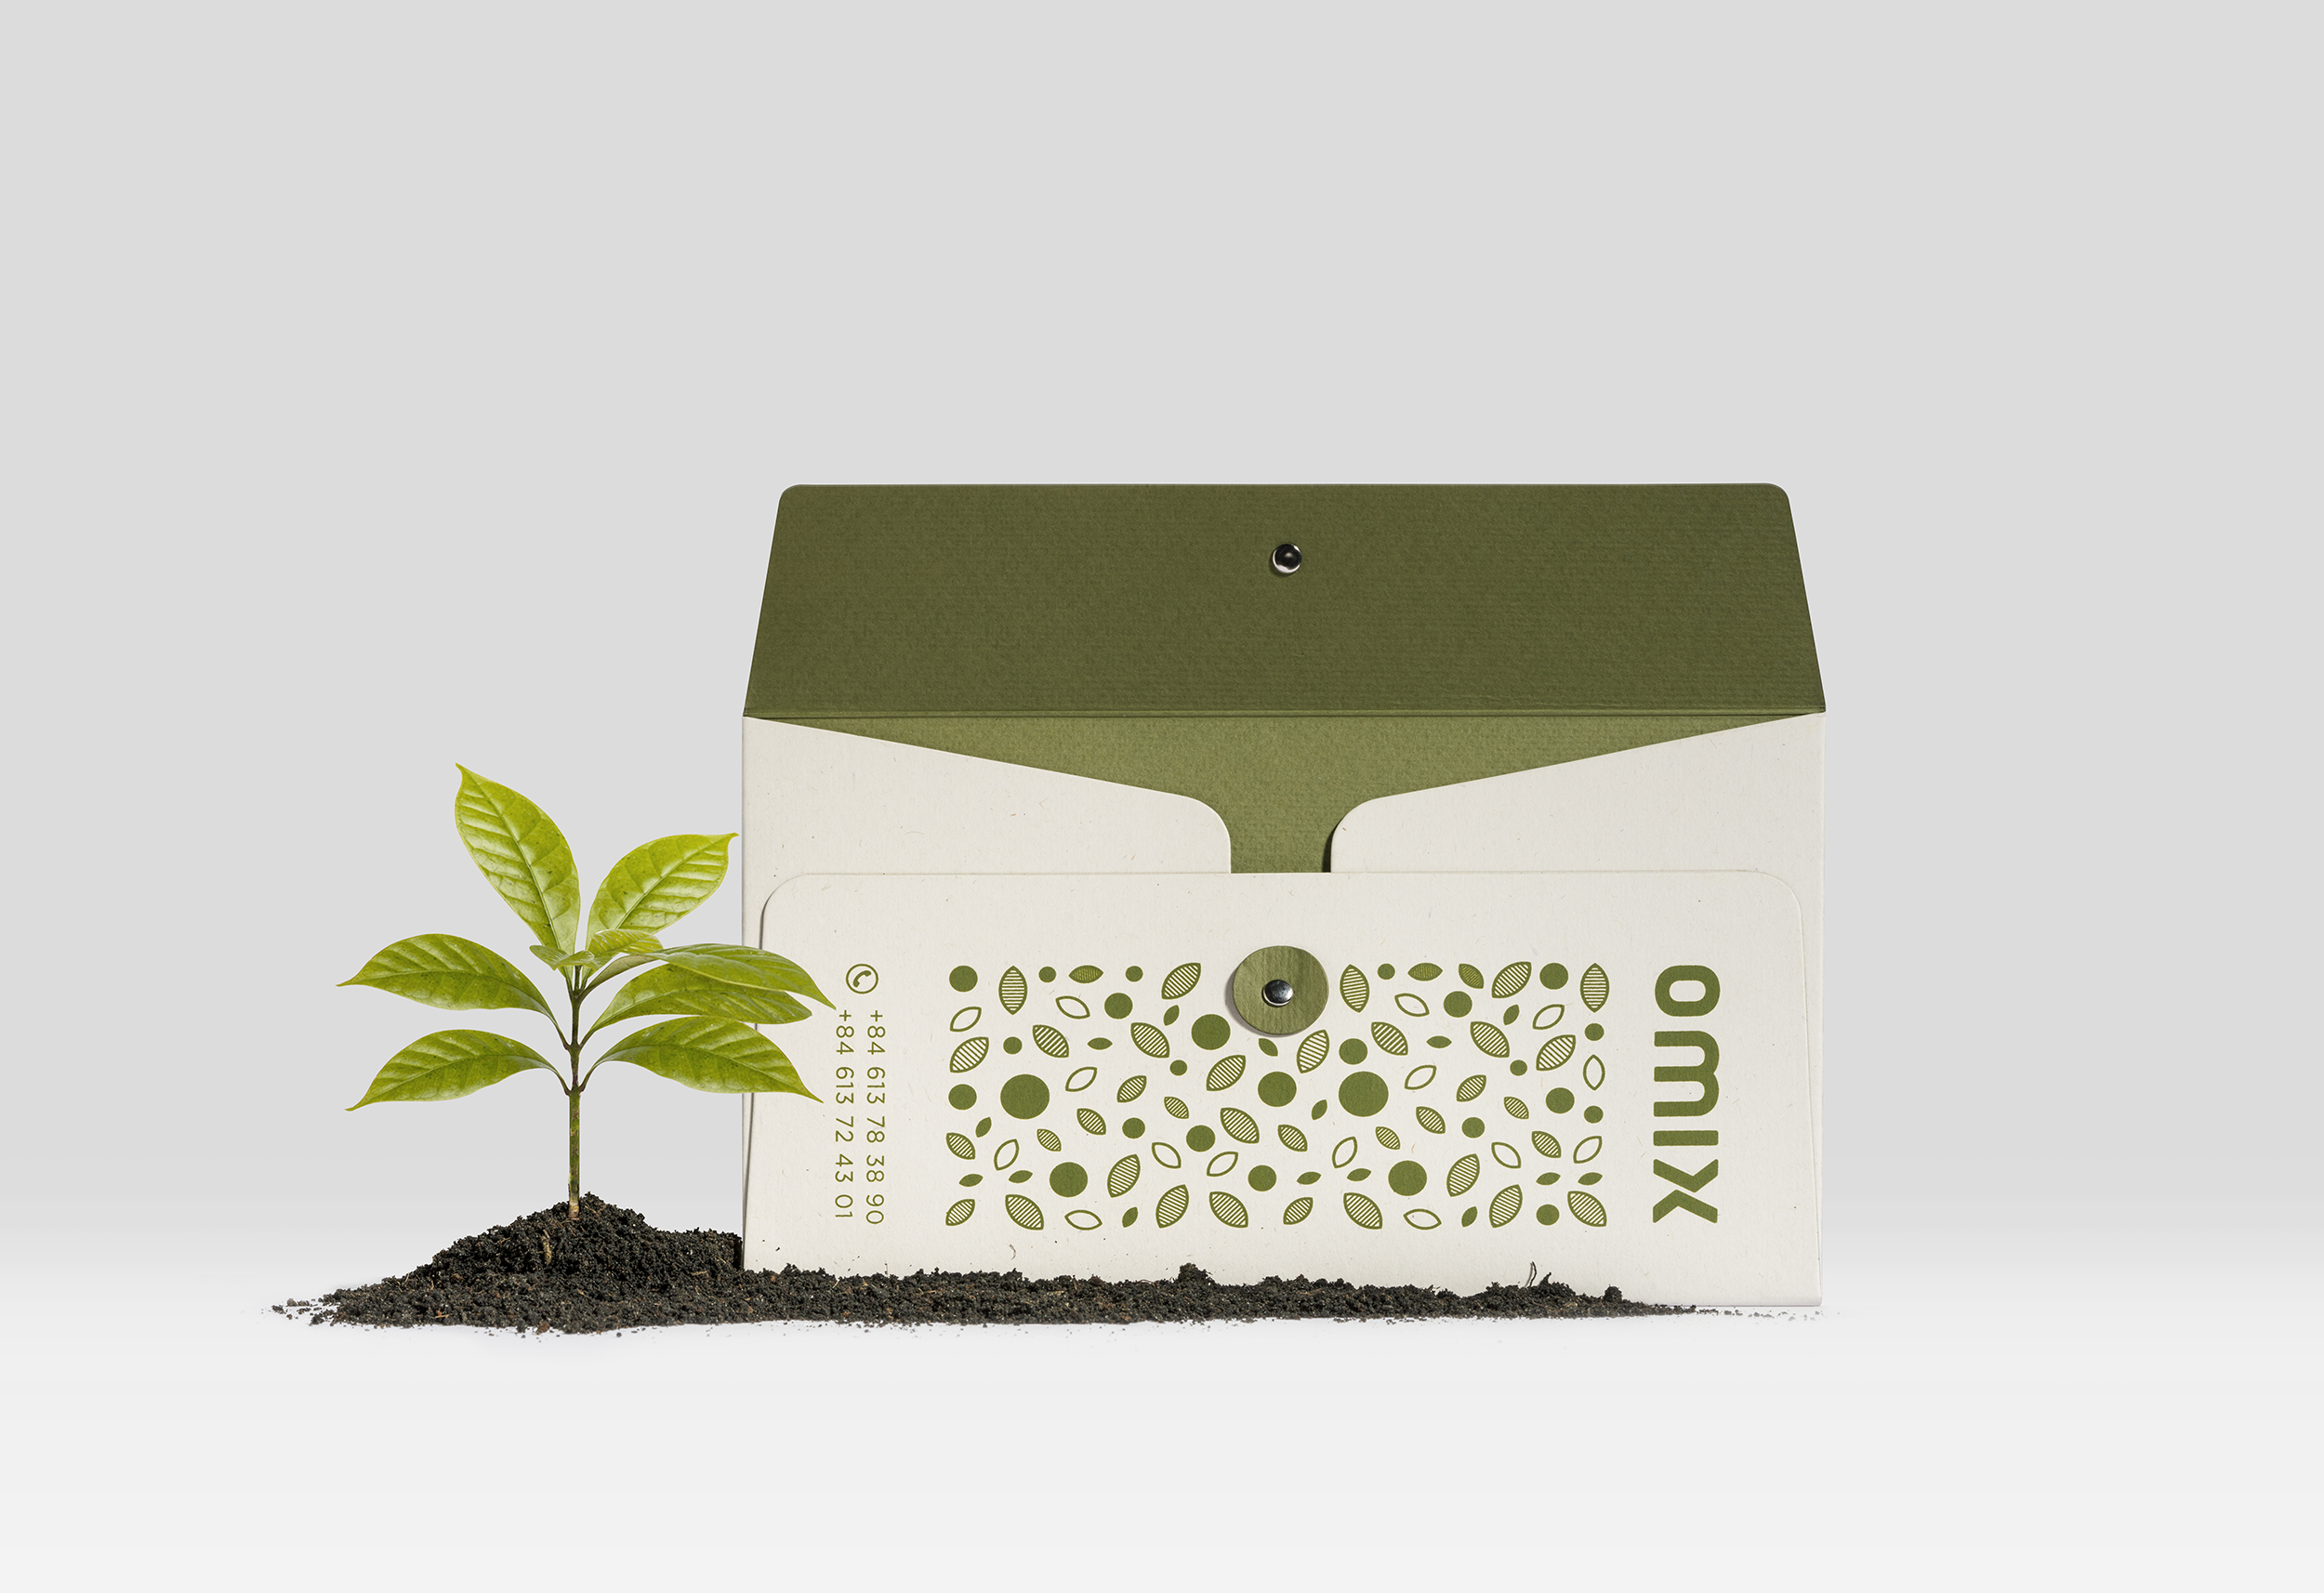 有机肥料品牌OMIX品牌视觉&包装设计